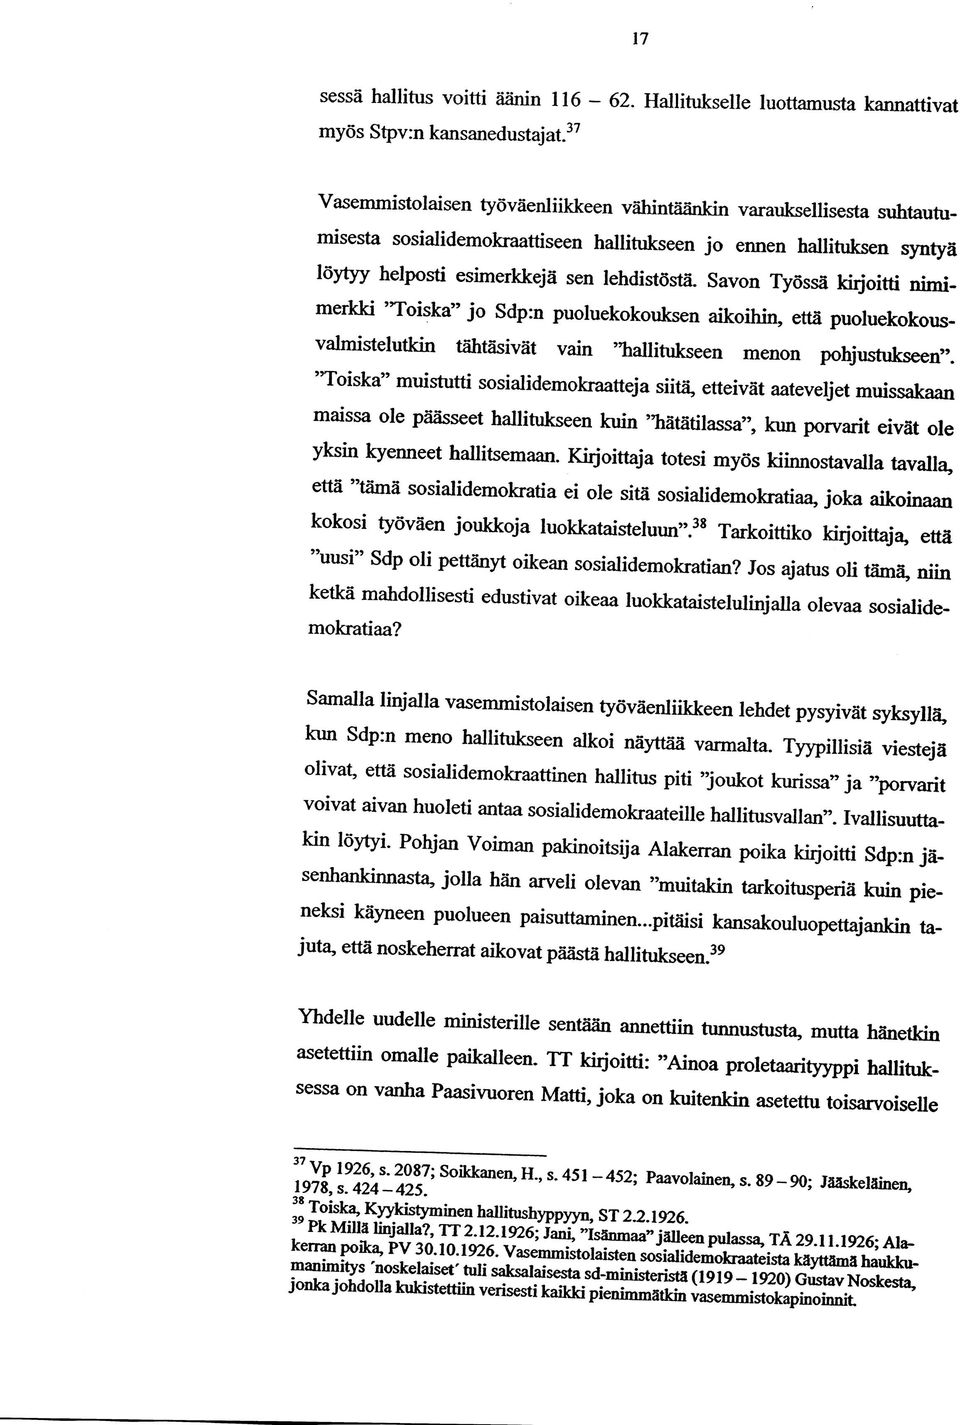 Savon Työssä kirjoitti nimimerkki Toiska jo Sdp:n puoluekokouksen aikoihin, että puoluekokousvalmistelutkin tähtäsivät vain "hallitukseen menon pohjustukseen.